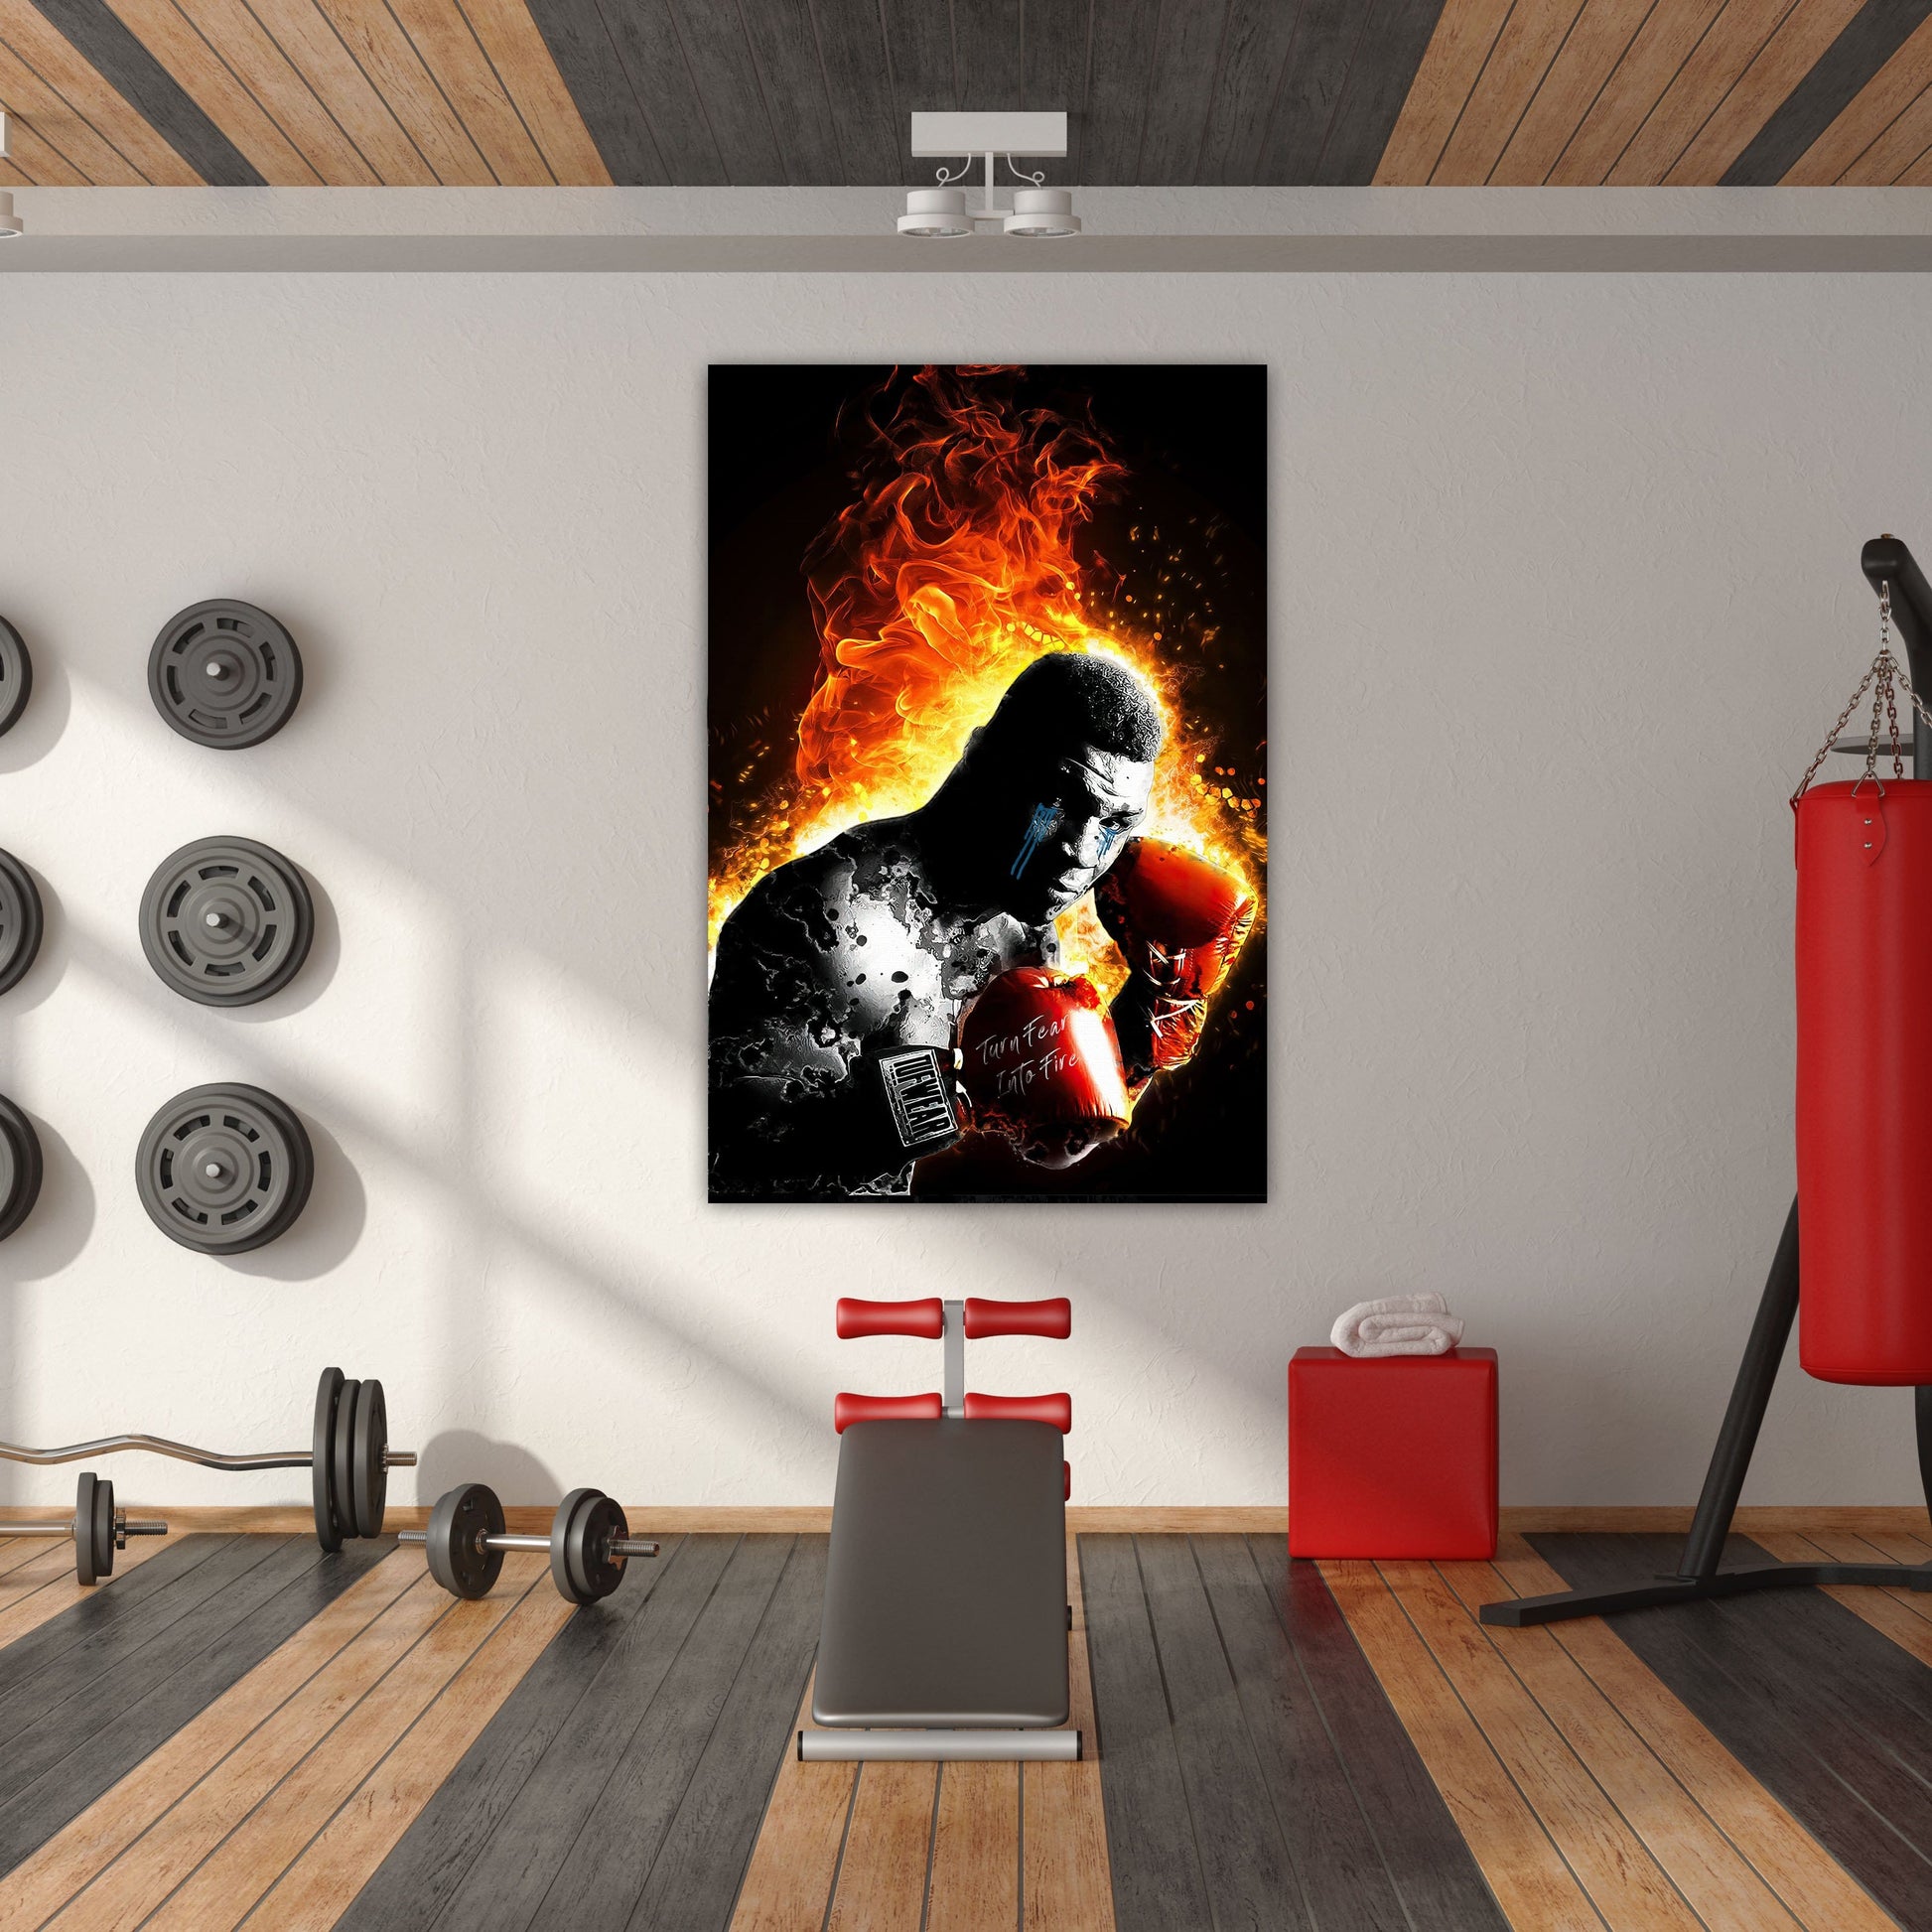 Mike Tyson Turn Fear Into Fire Wall Art | Inspirational Wall Art Motivational Wall Art Quotes Office Art | ImpaktMaker Exclusive Canvas Art Portrait